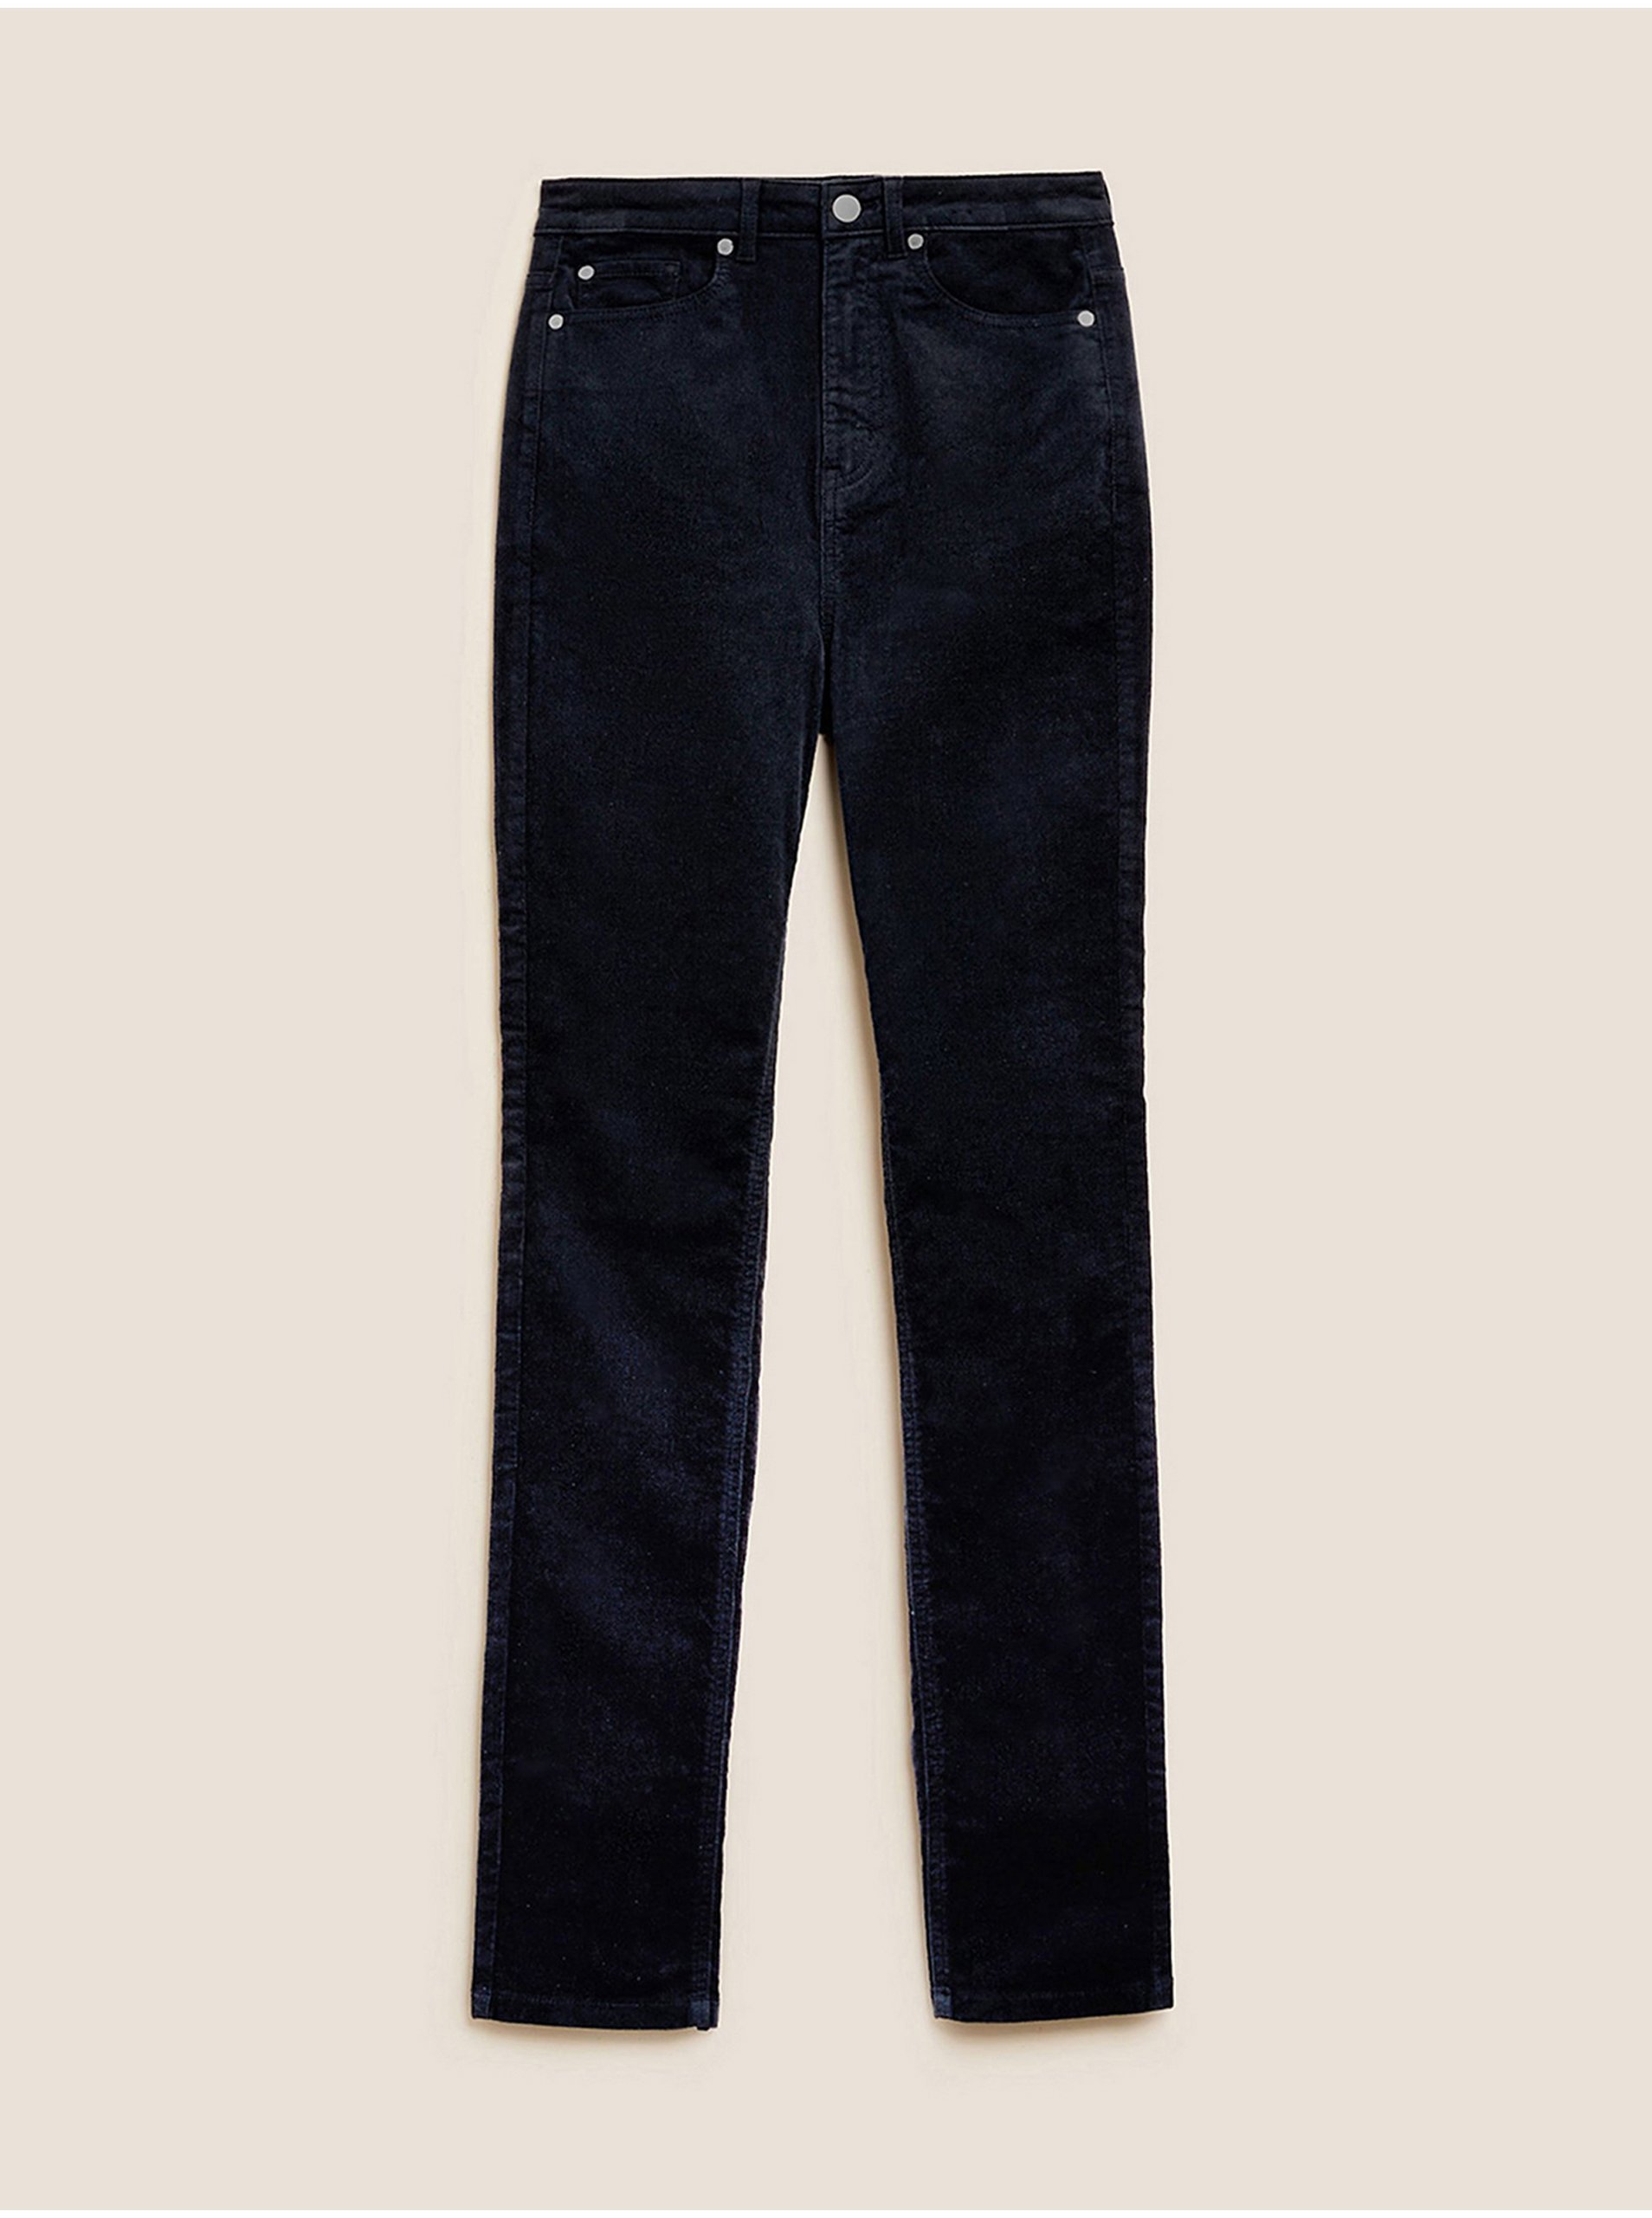 E-shop Tmavě modré dámské manšestrové kalhoty Marks & Spencer Sienna